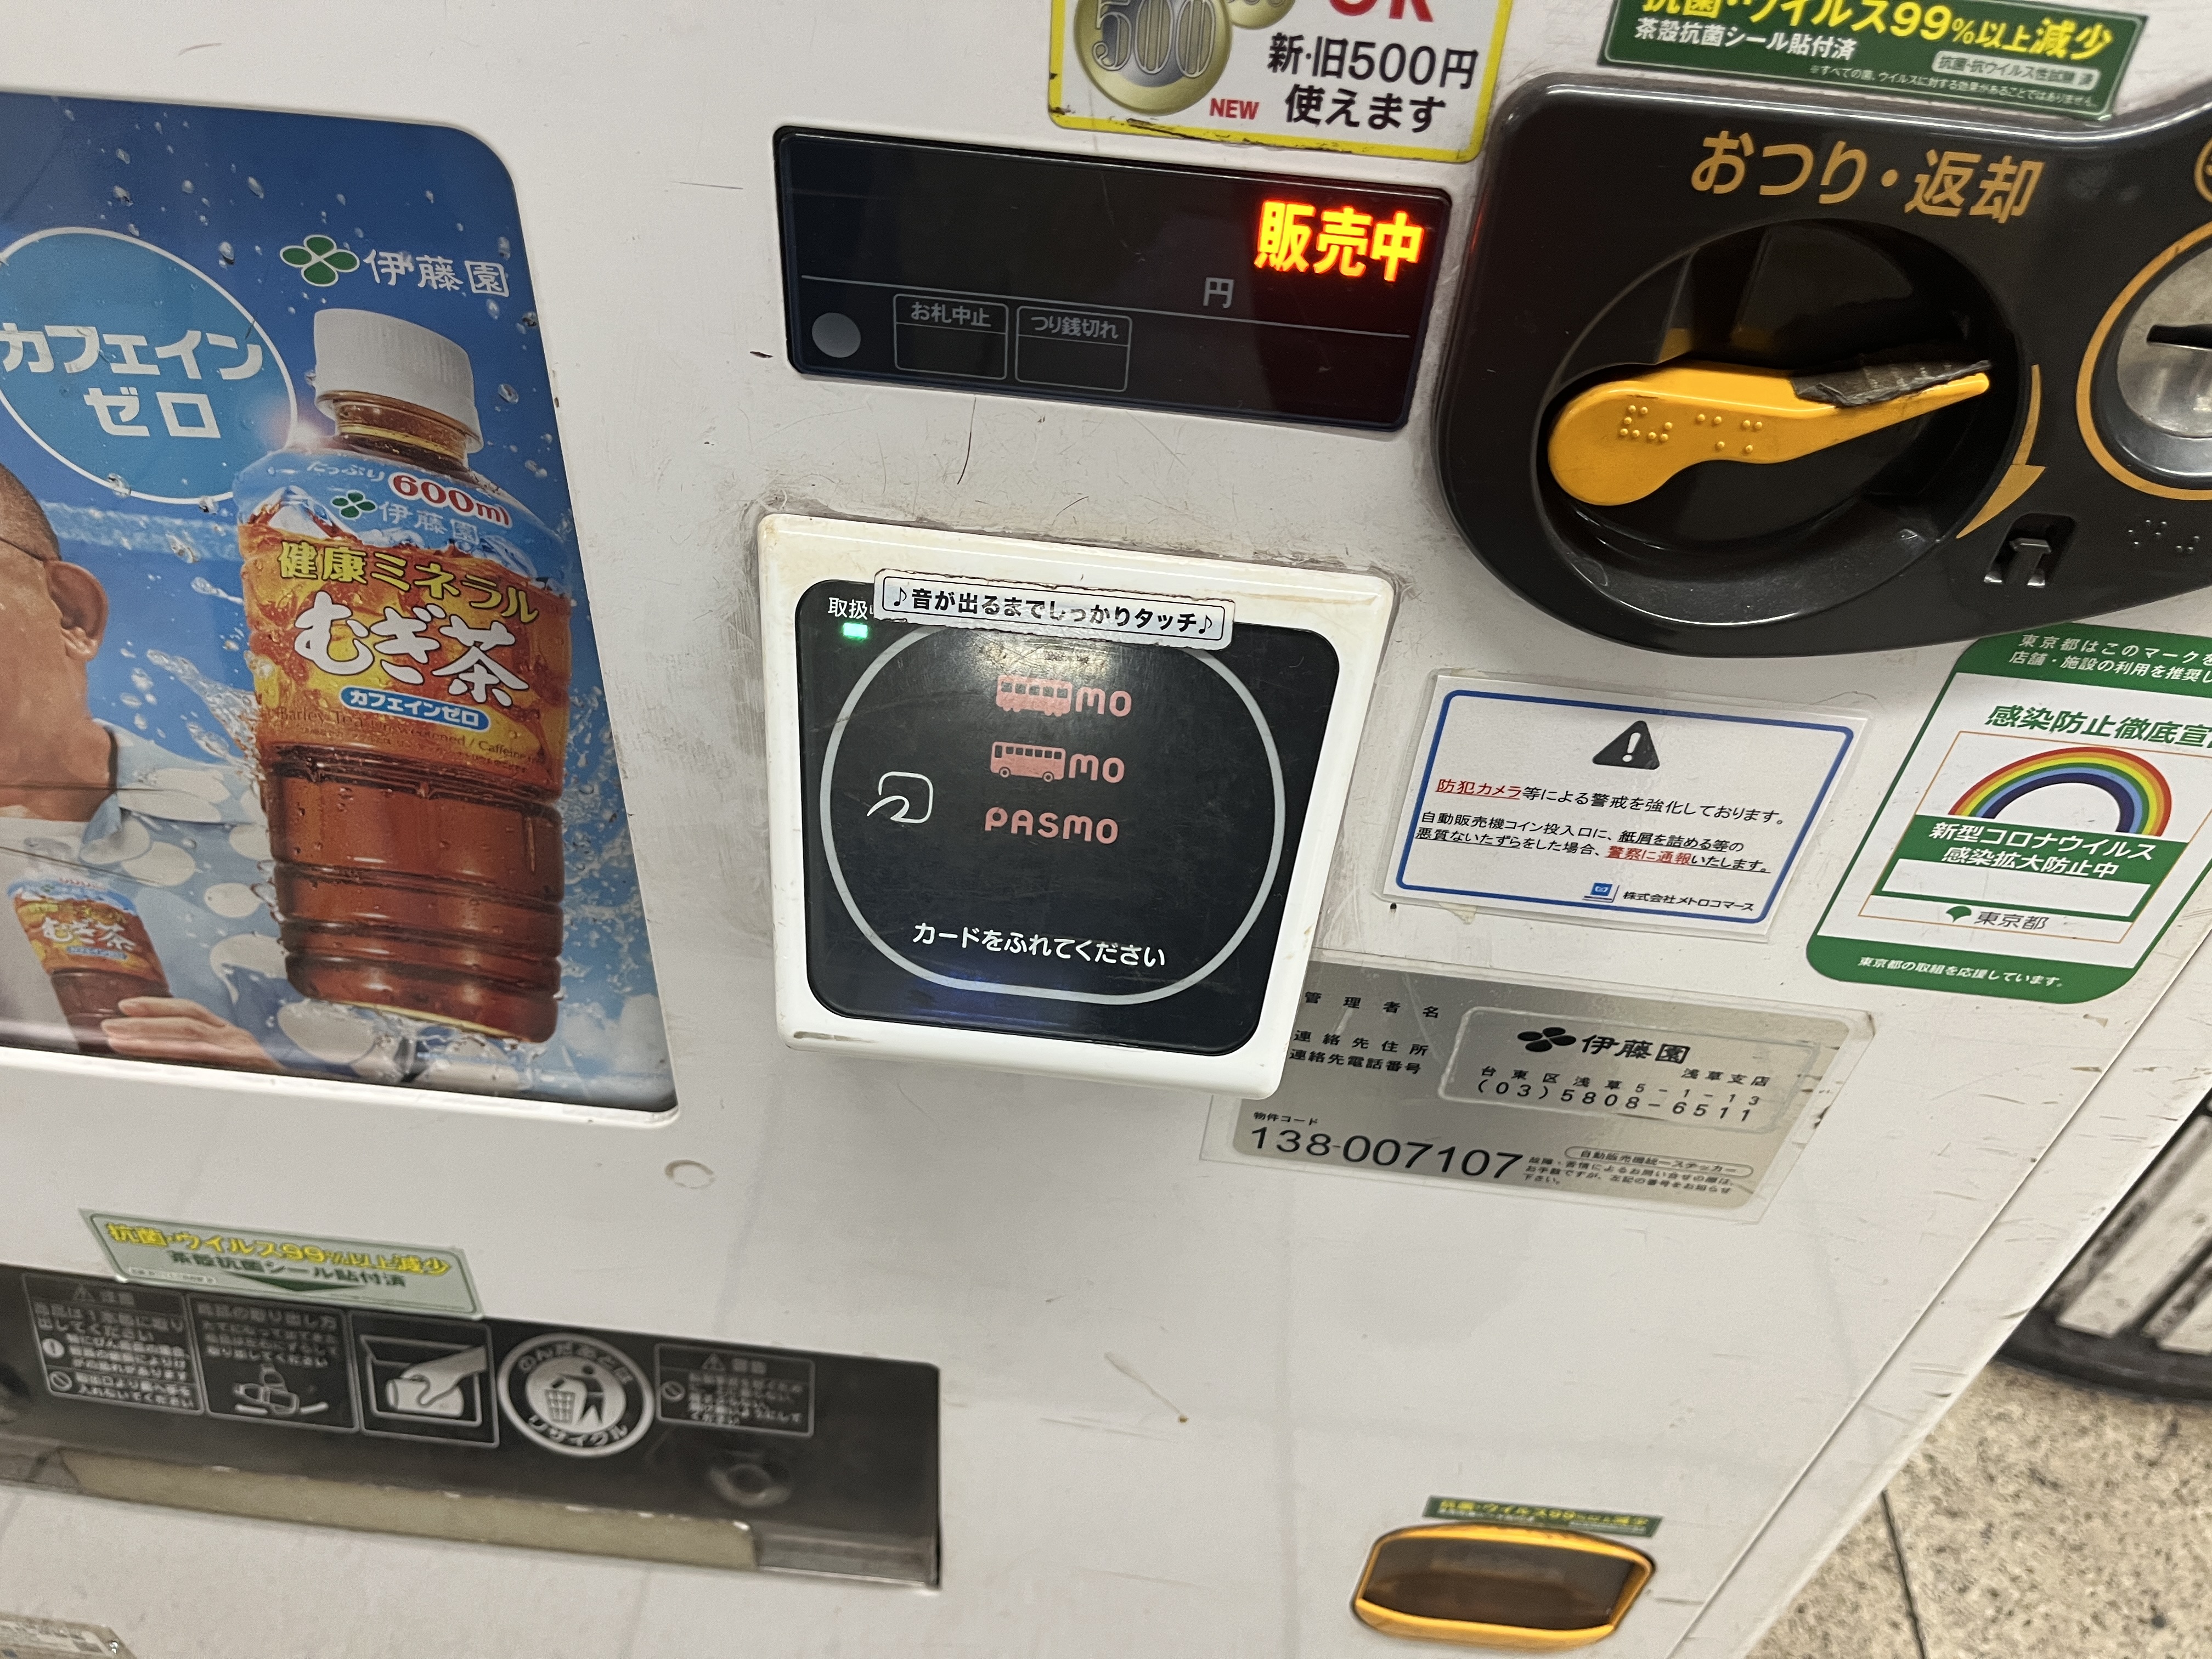 파스모자판기